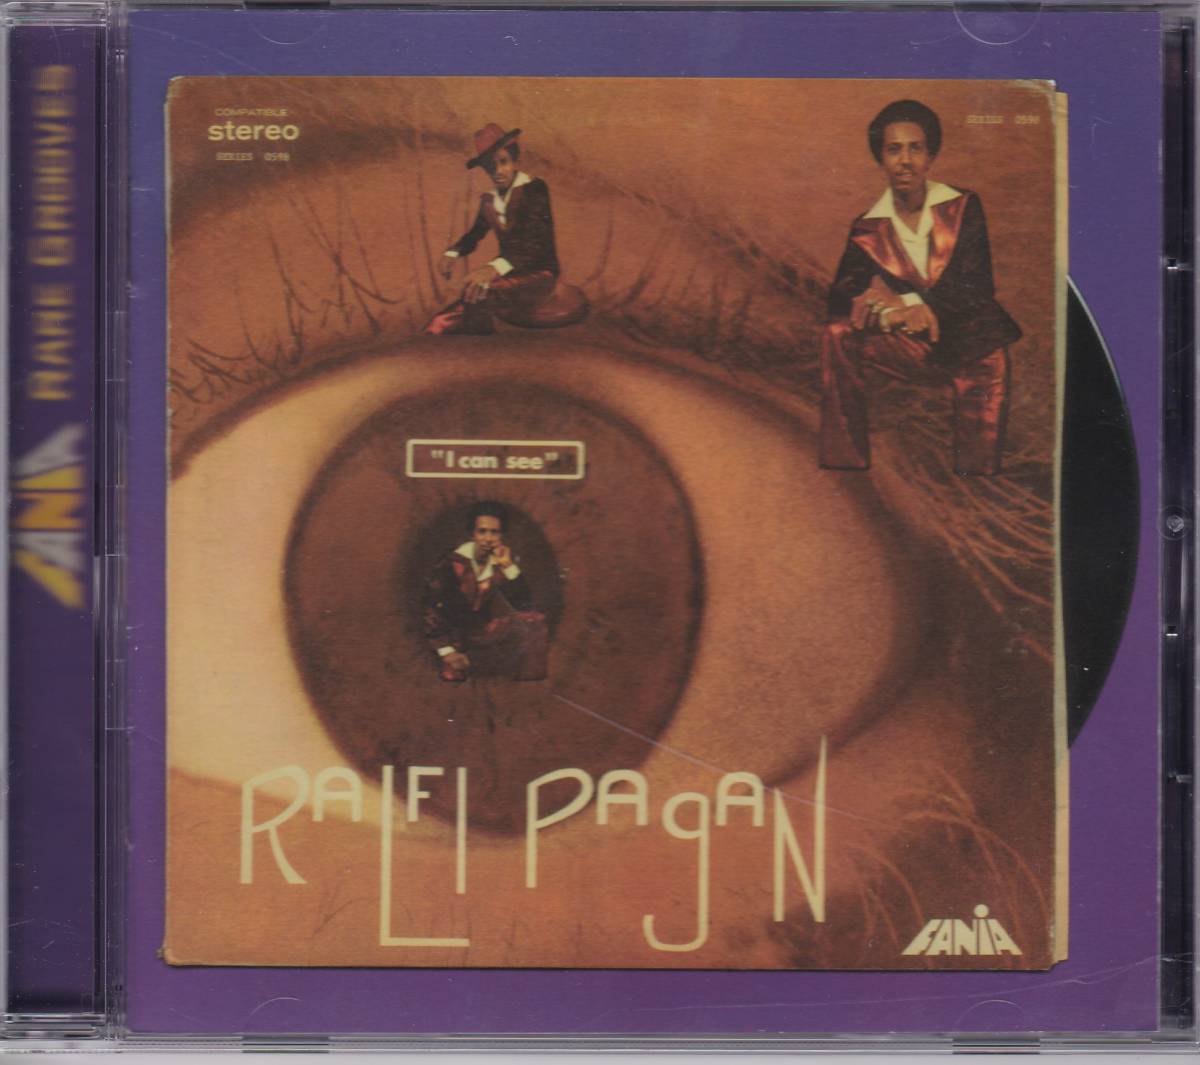 Rare Groove/Latin Funk/甘茶ソウル■RALFI PAGAN / I Can See (1975) レア廃盤 AtoZディスクガイド掲載作!! amazonで9,800円販売中!!_画像1